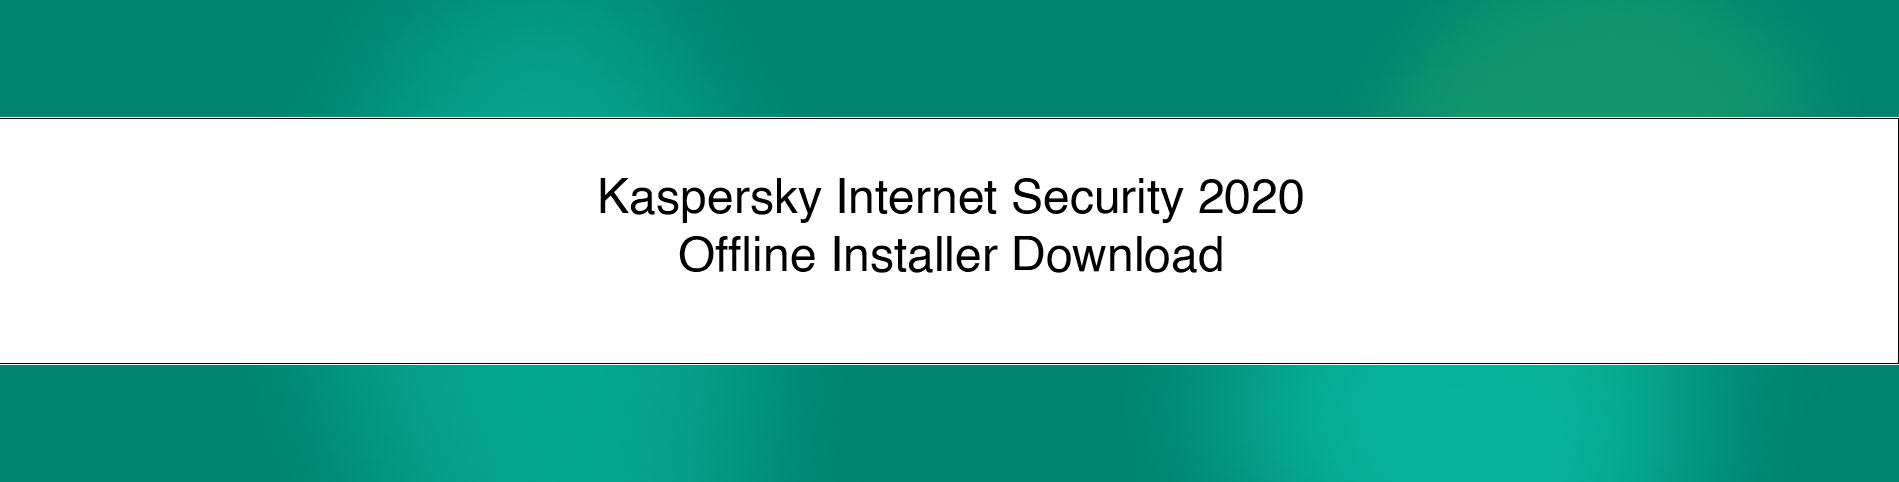 kaspersky internet security download offline